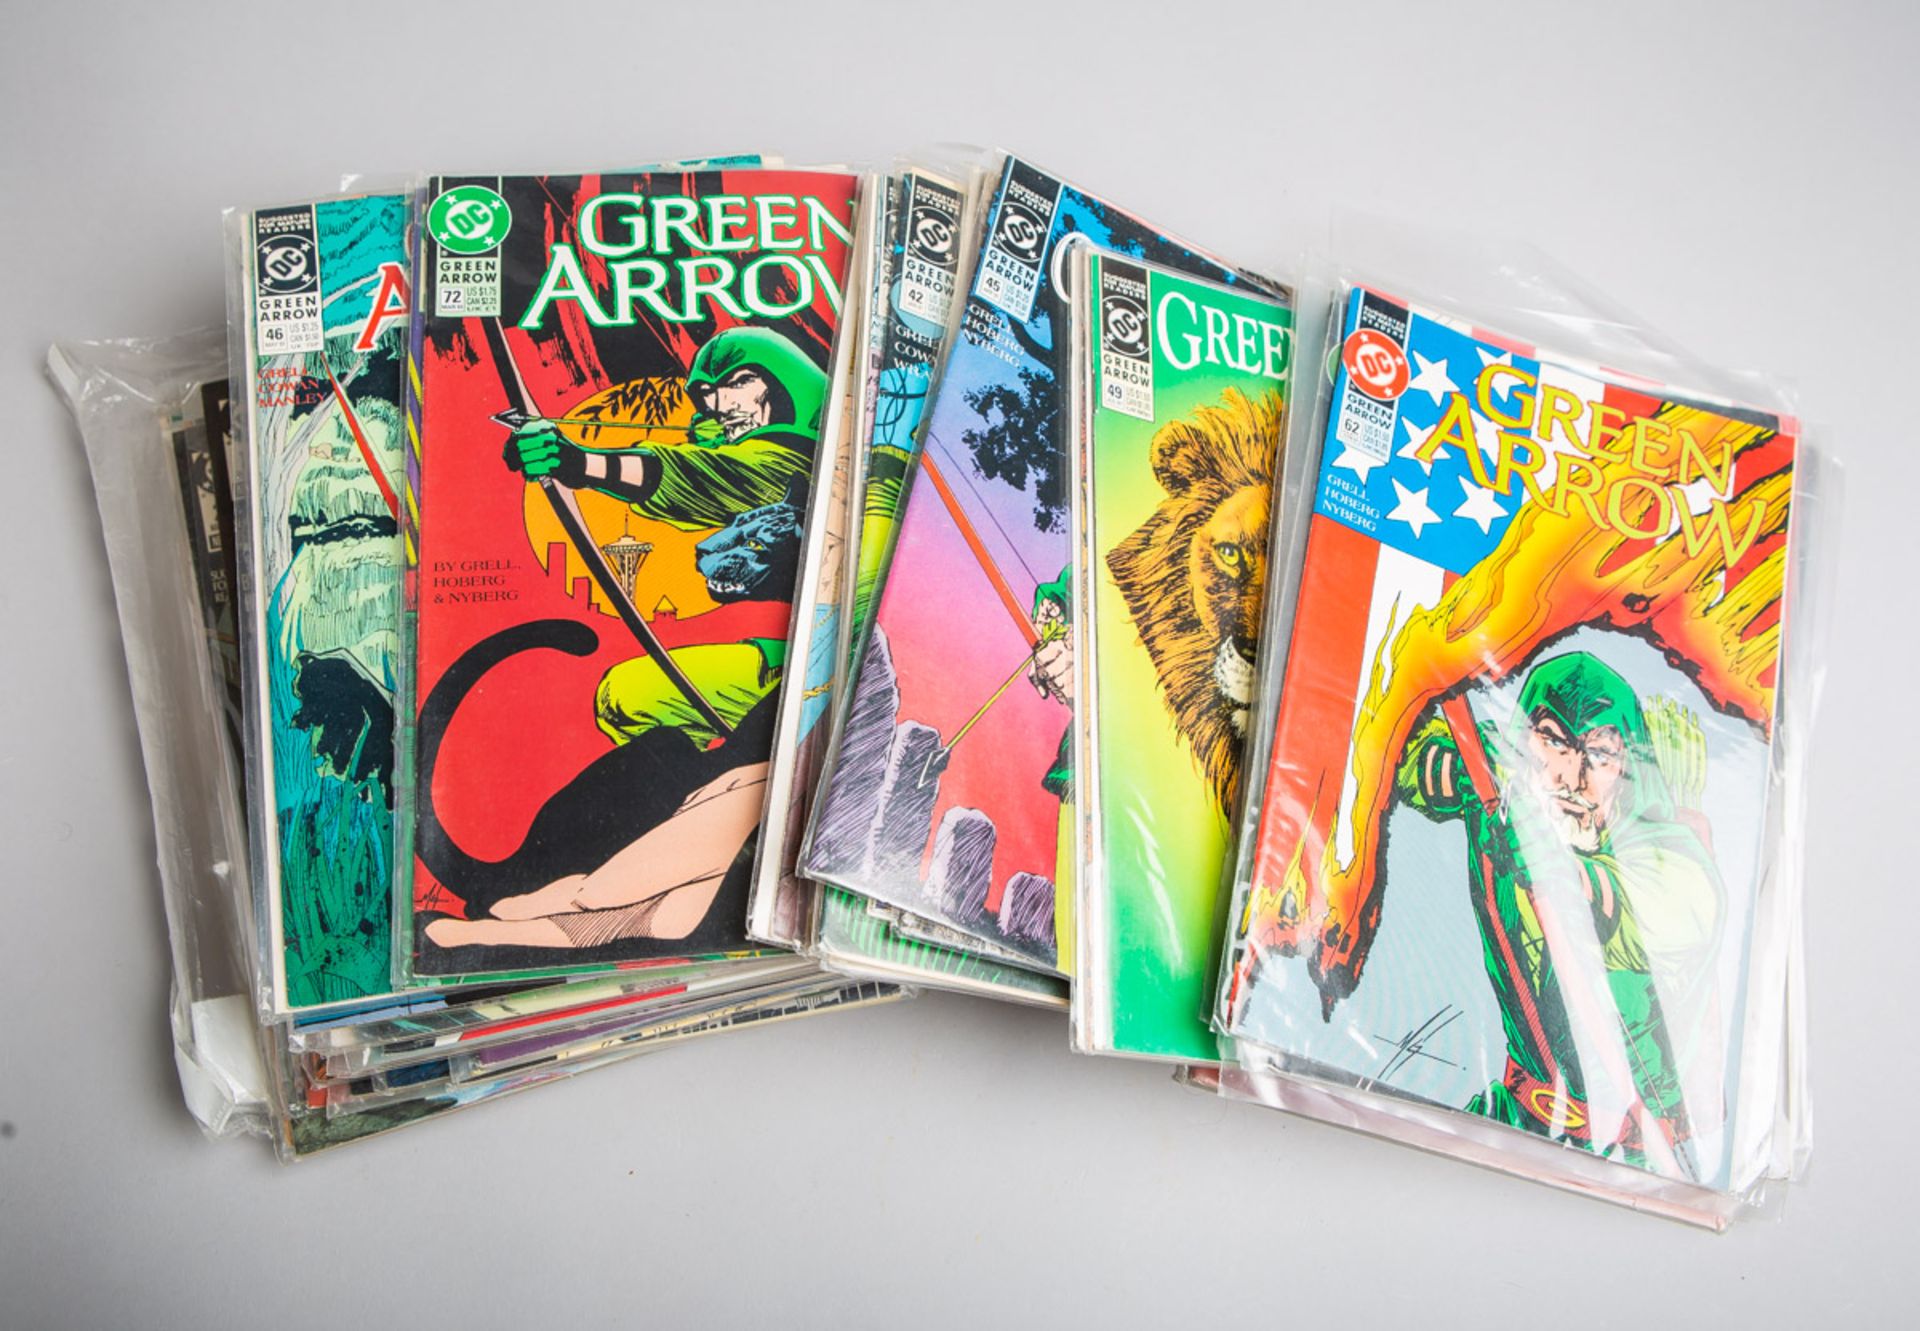 62-teiliges Konvolut von "Green Arrow" Comic-Heften (1980/90er Jahre)